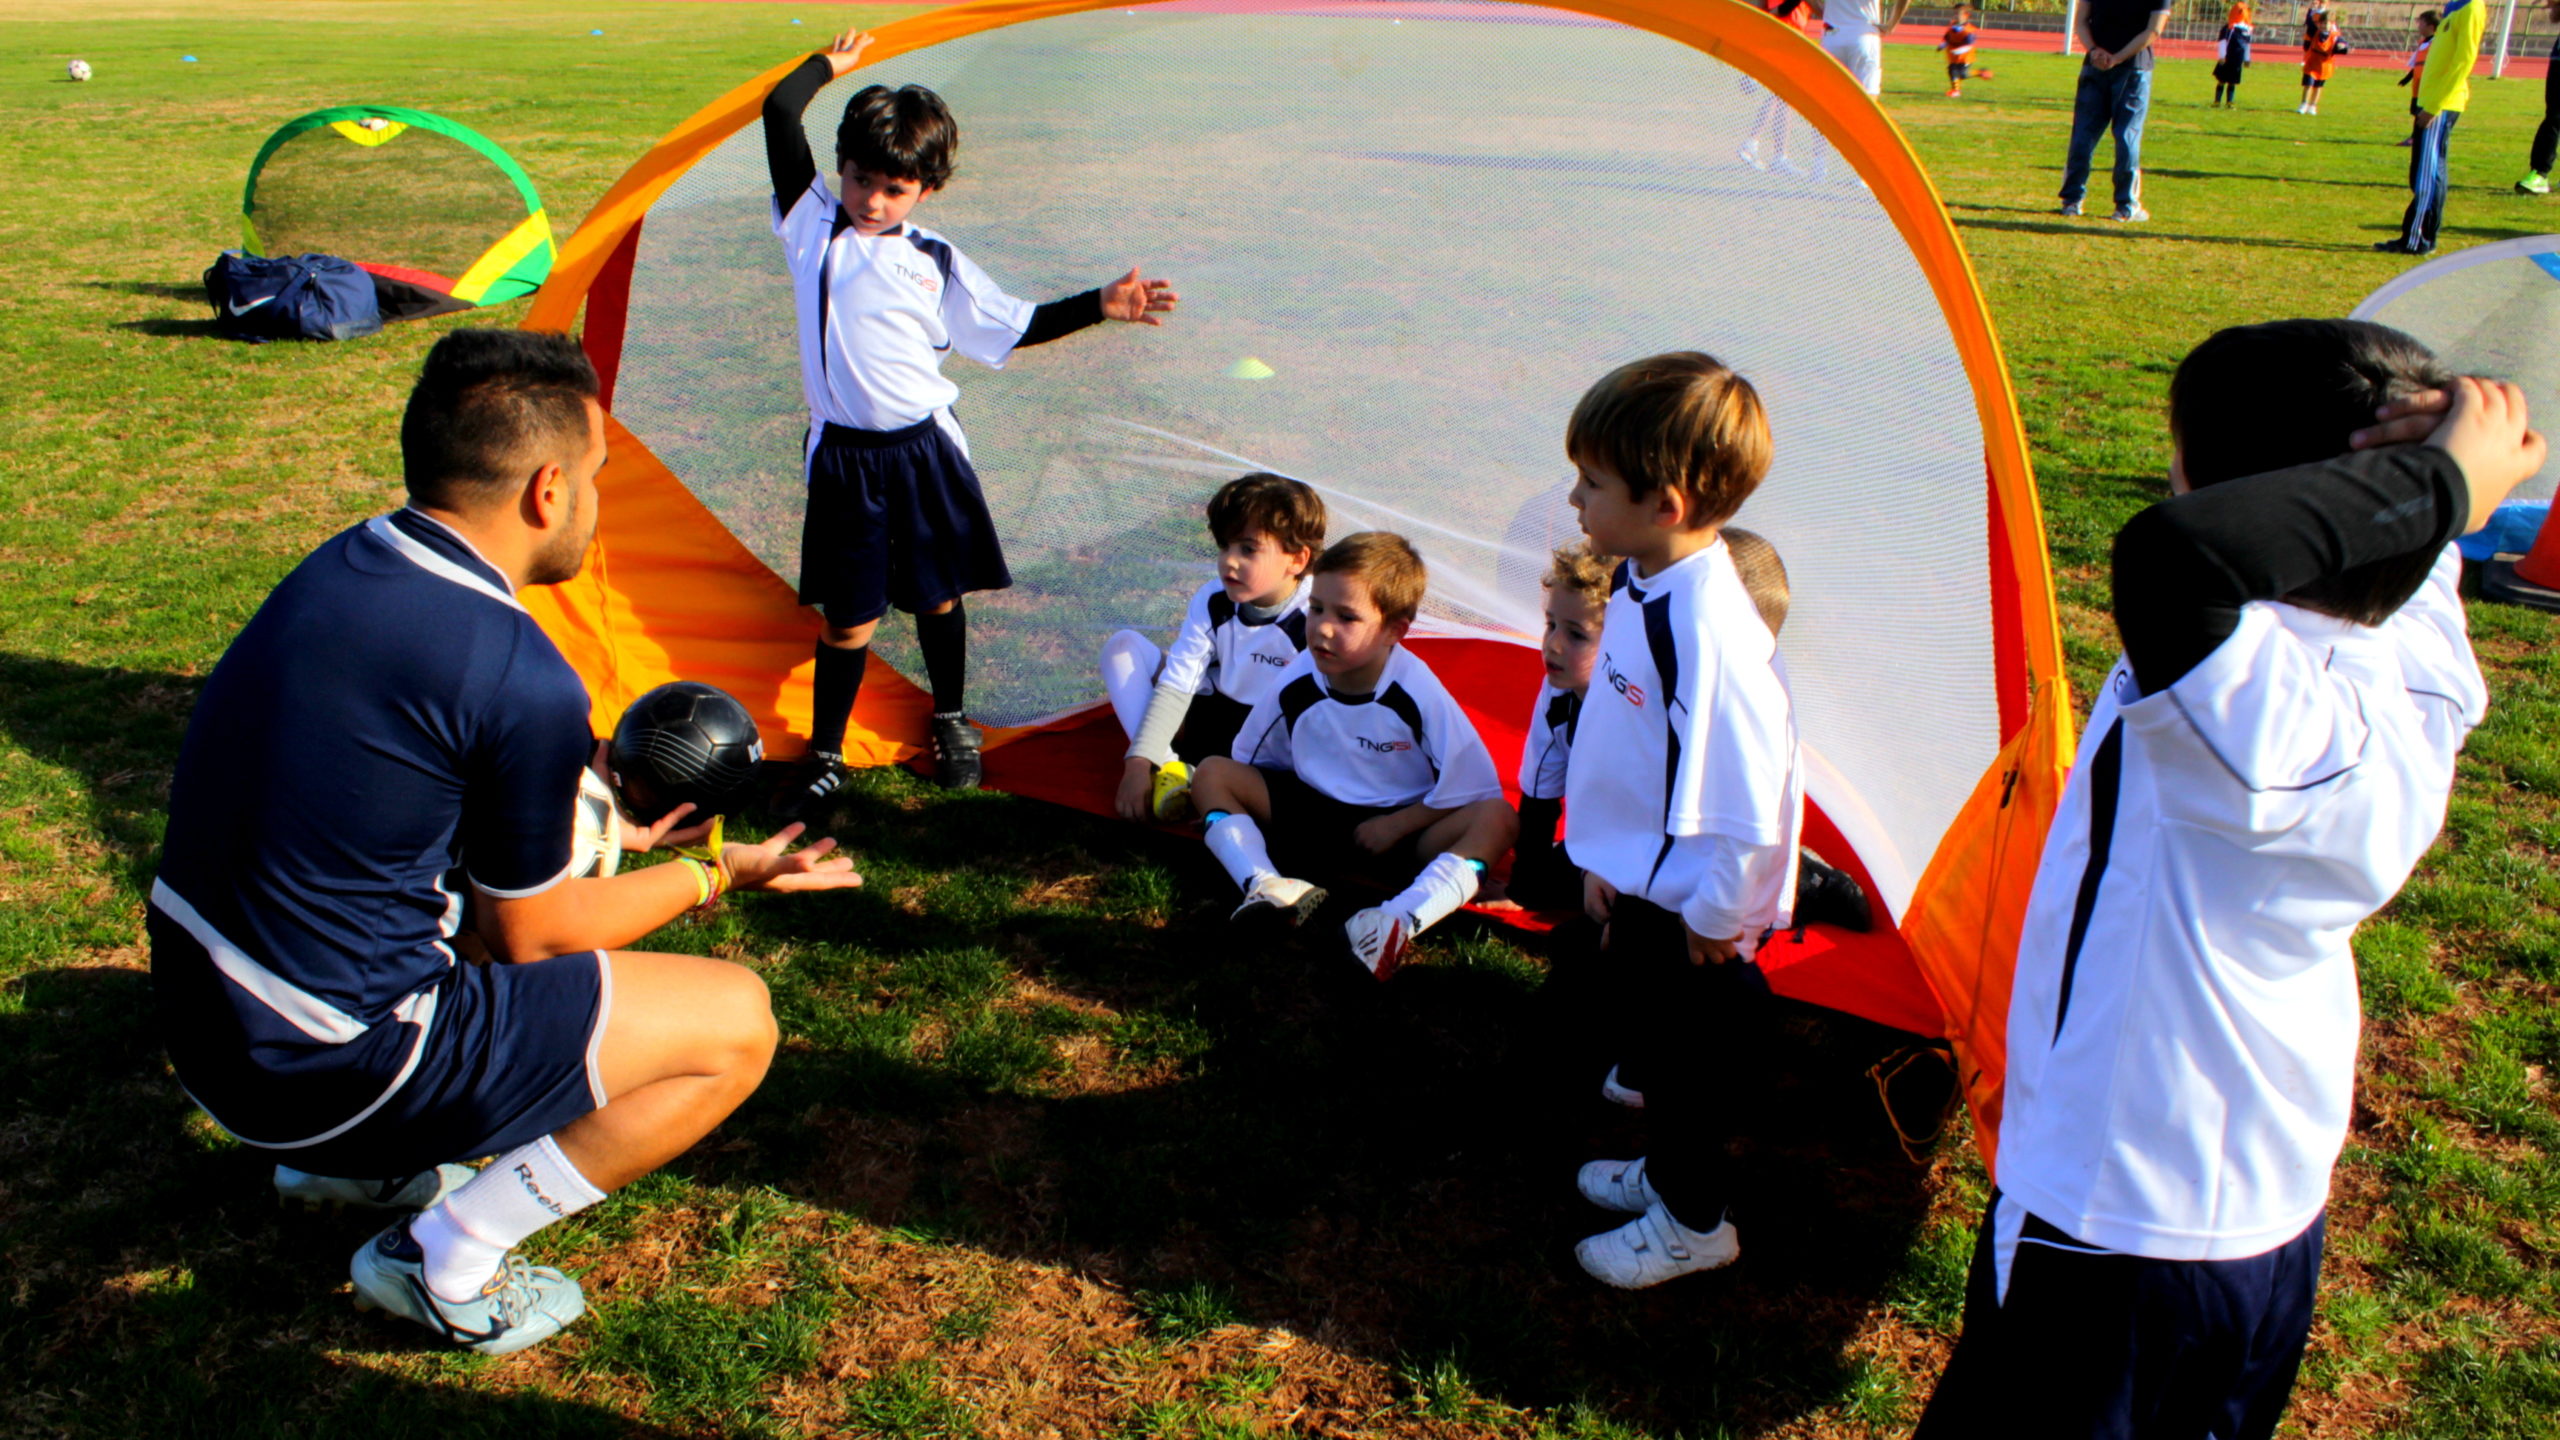 Next Generation Soccer Camp Texas: fútbol, formación y diversión